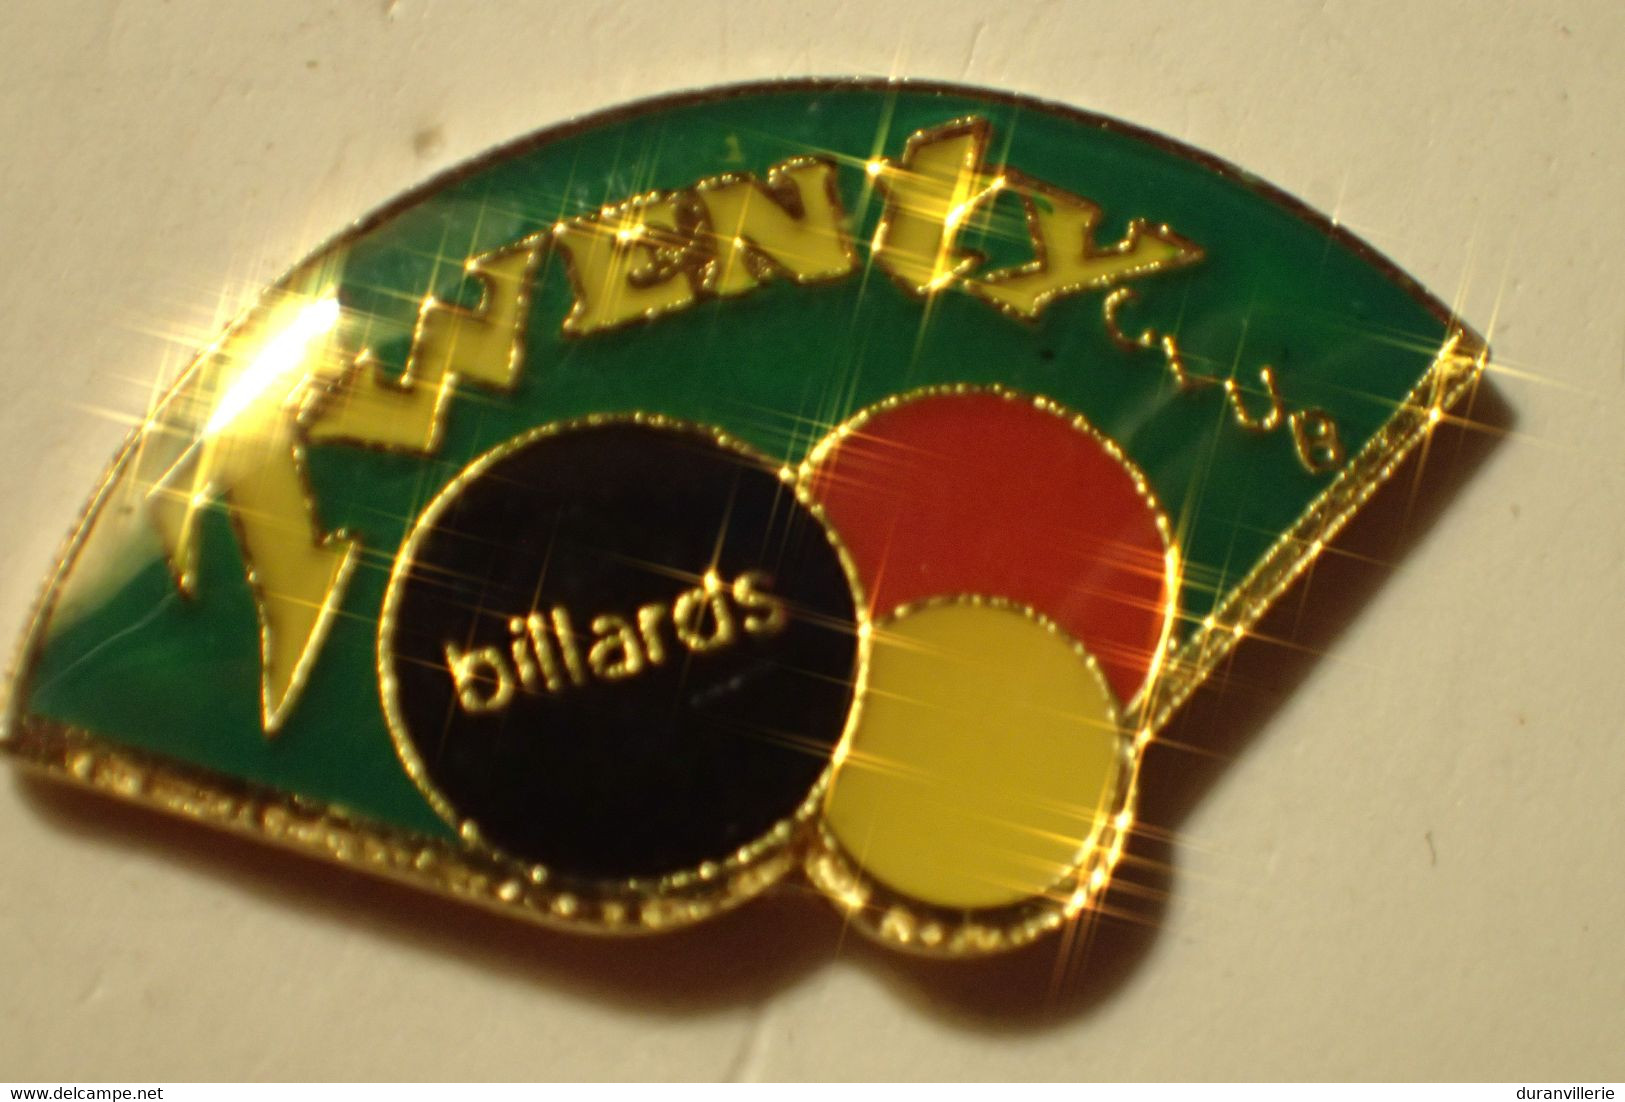 Billard Twenty Club - Billard